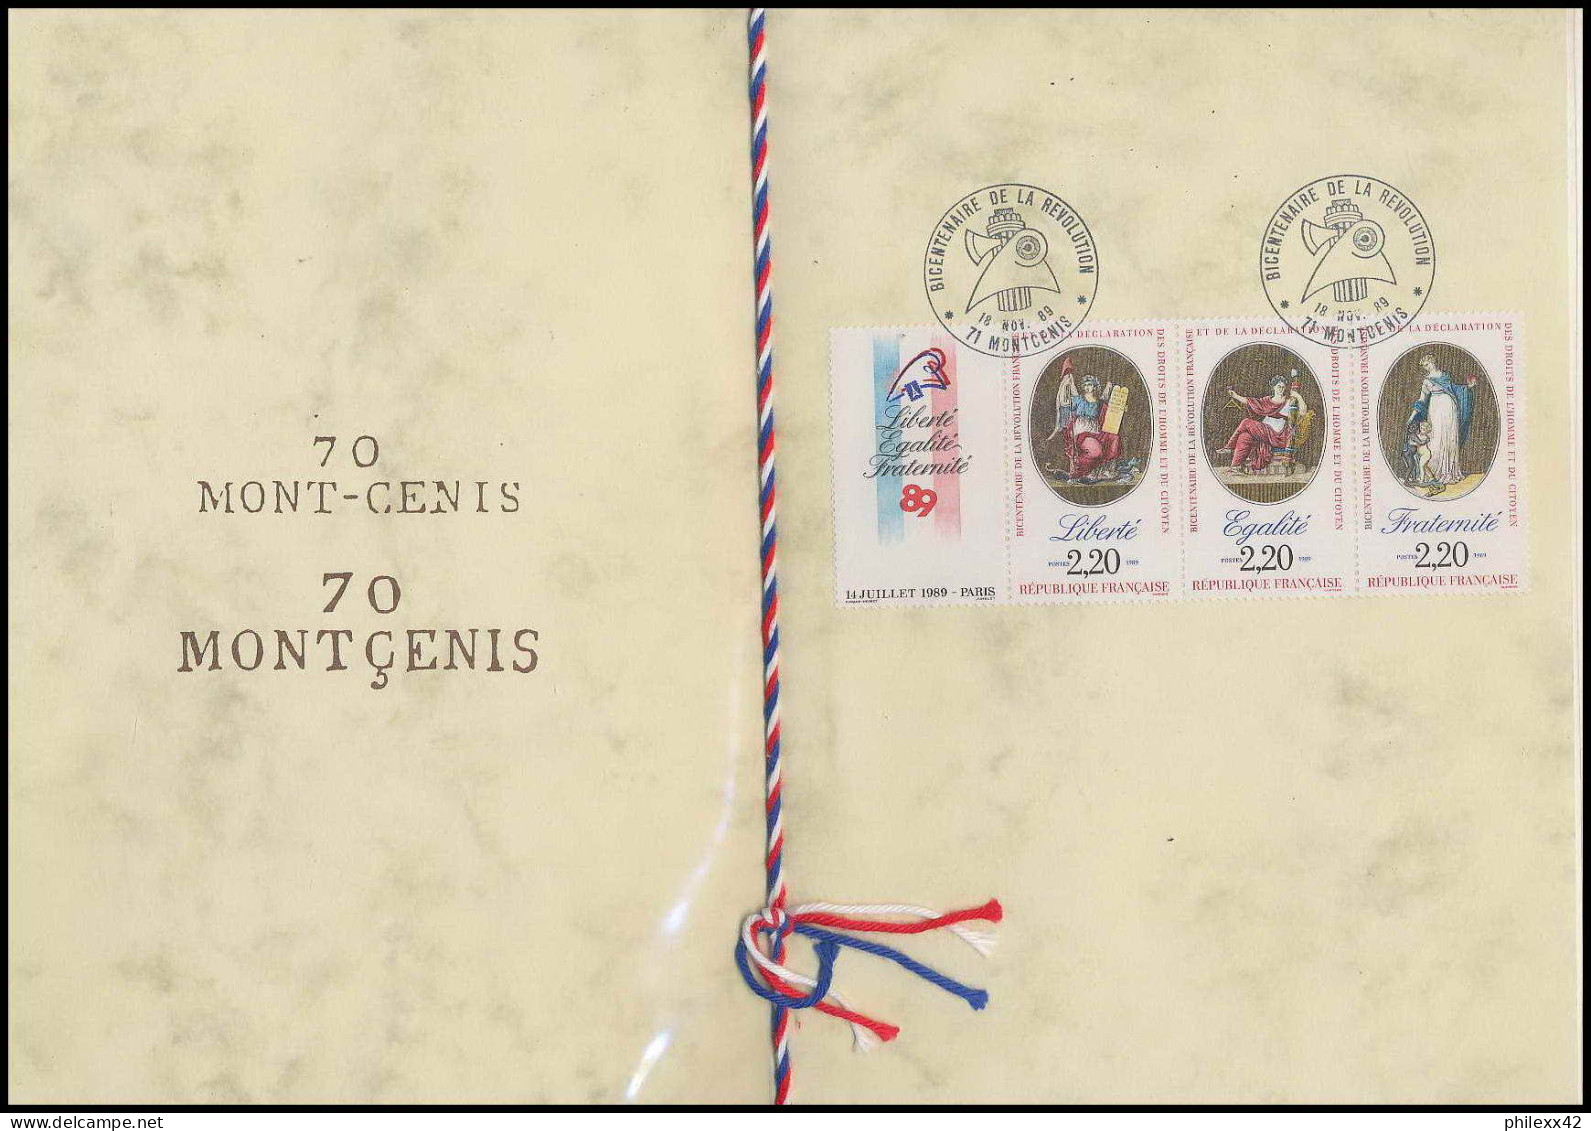 312 France bicentenaire révolution francaise lot N° 2573/2576 lettres documents fdc maximum voir scans